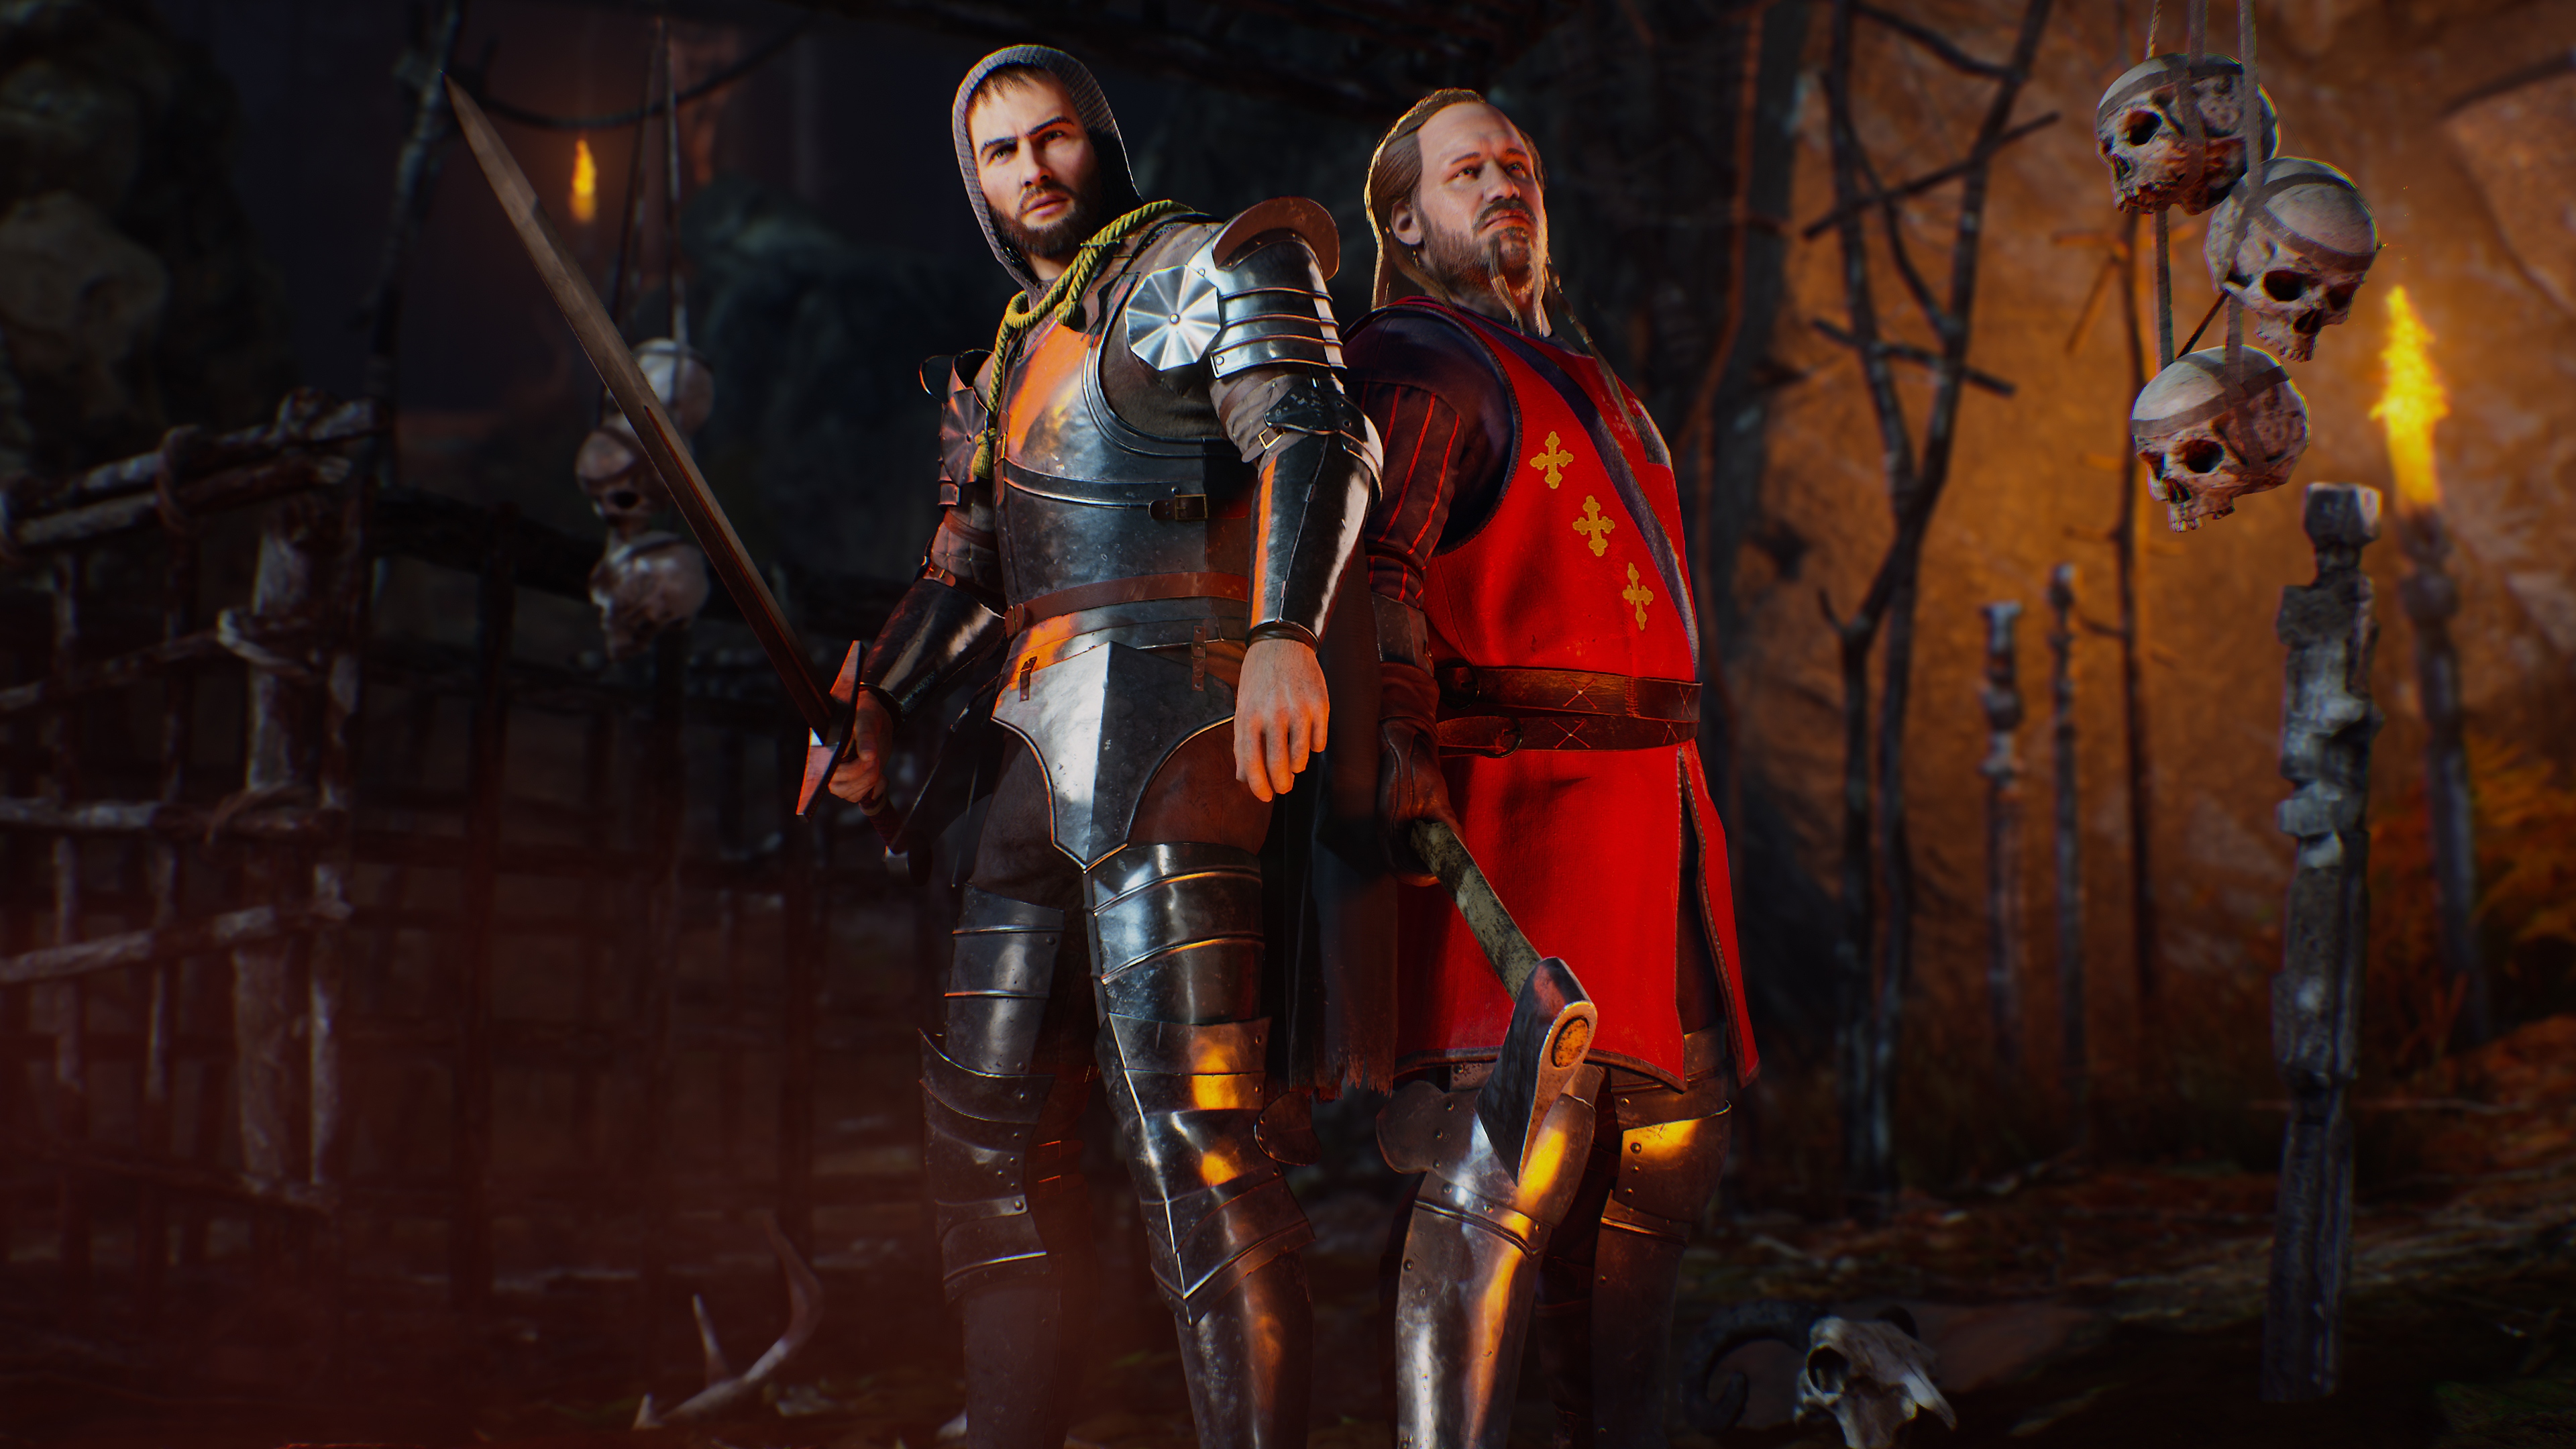 Evil Dead: The Game - Capture d'écran montrant deux personnages vêtus en tenue de chevalier.